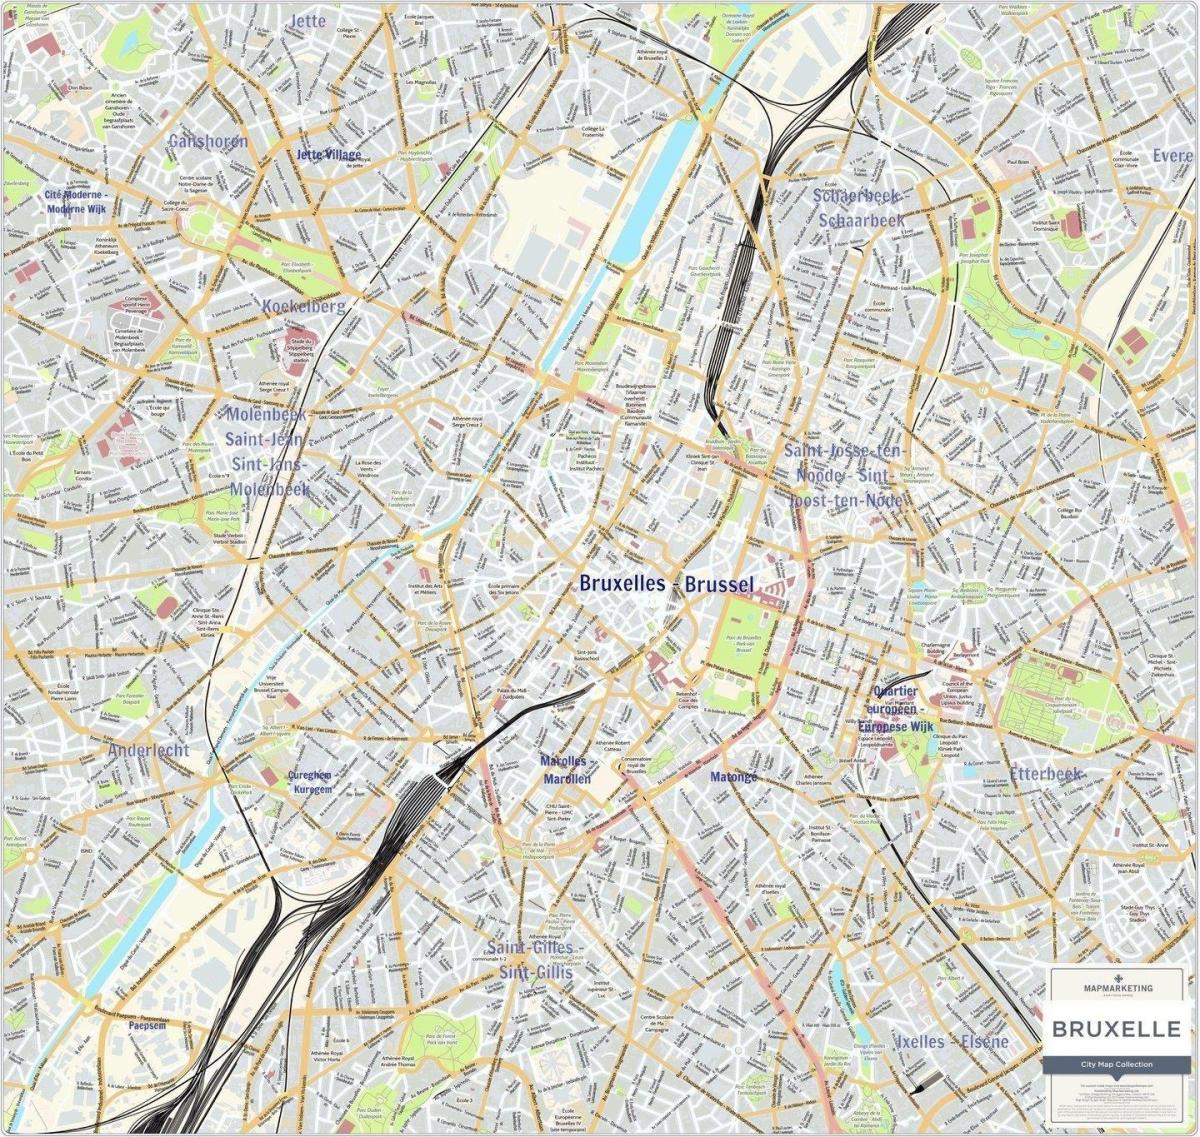 Mappa della città di Bruxelles